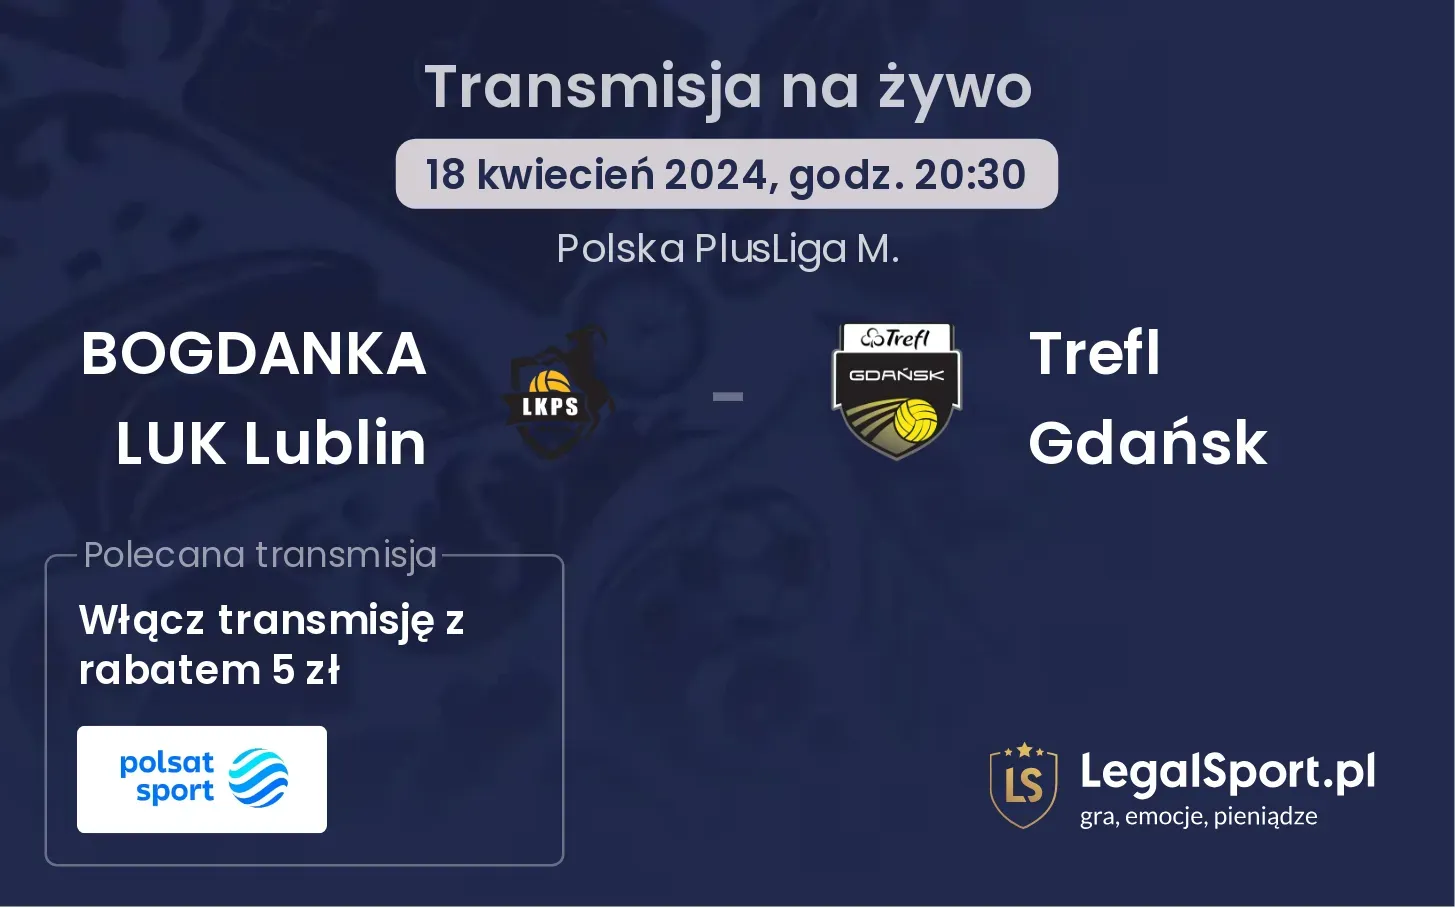 BOGDANKA LUK Lublin - Trefl Gdańsk transmisja na żywo